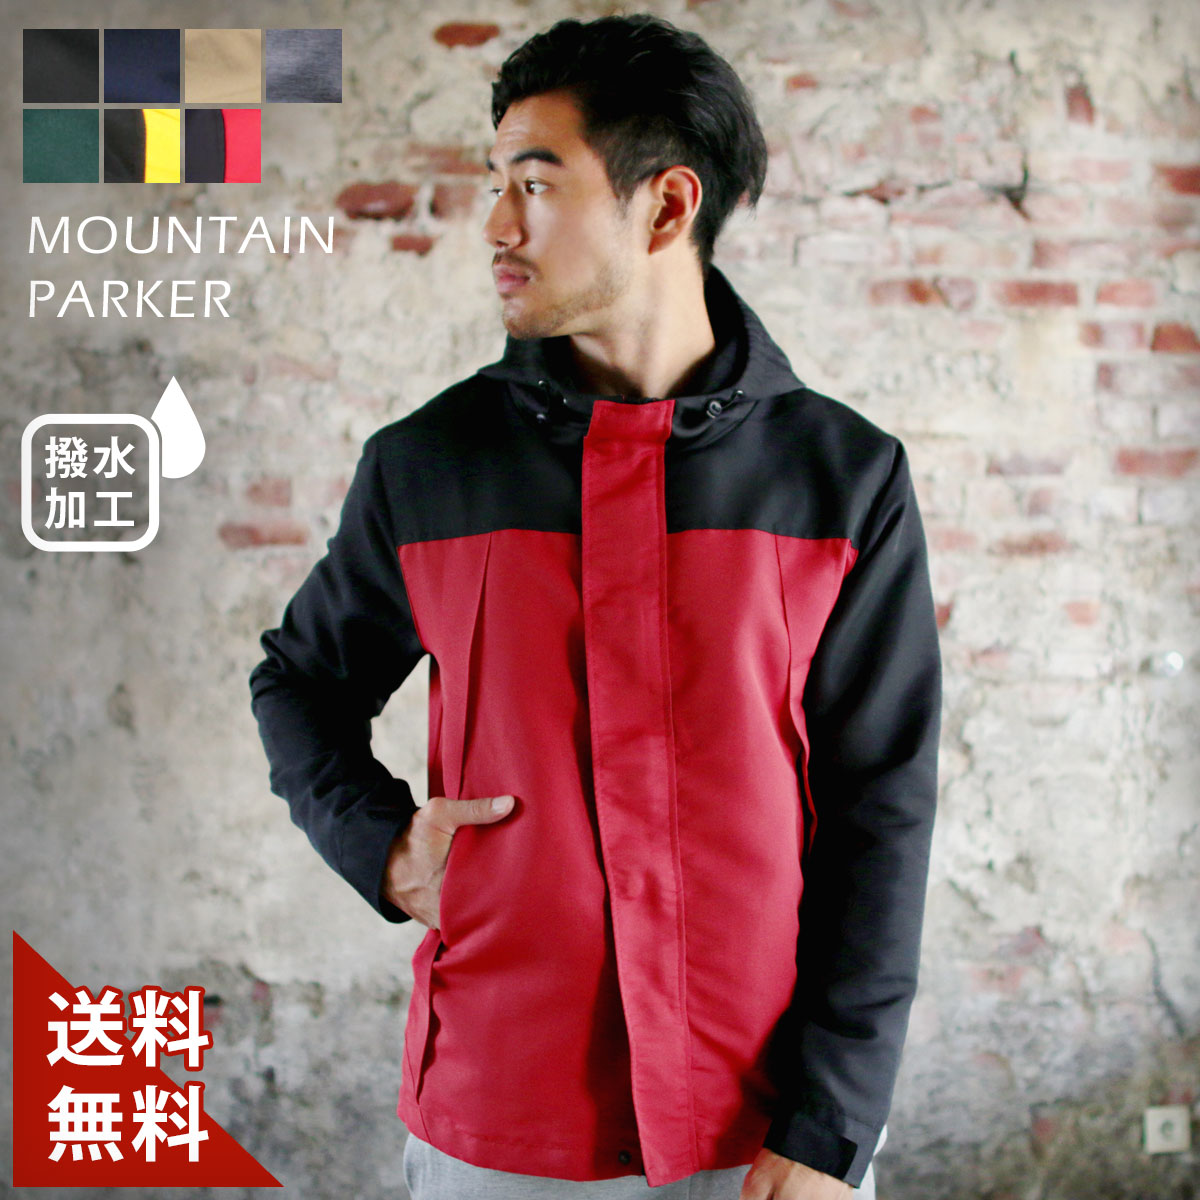 50代メンズ 秋の登山ハイキングで着るアウター 安全かつ体温が保てる服装のおすすめランキング キテミヨ Kitemiyo